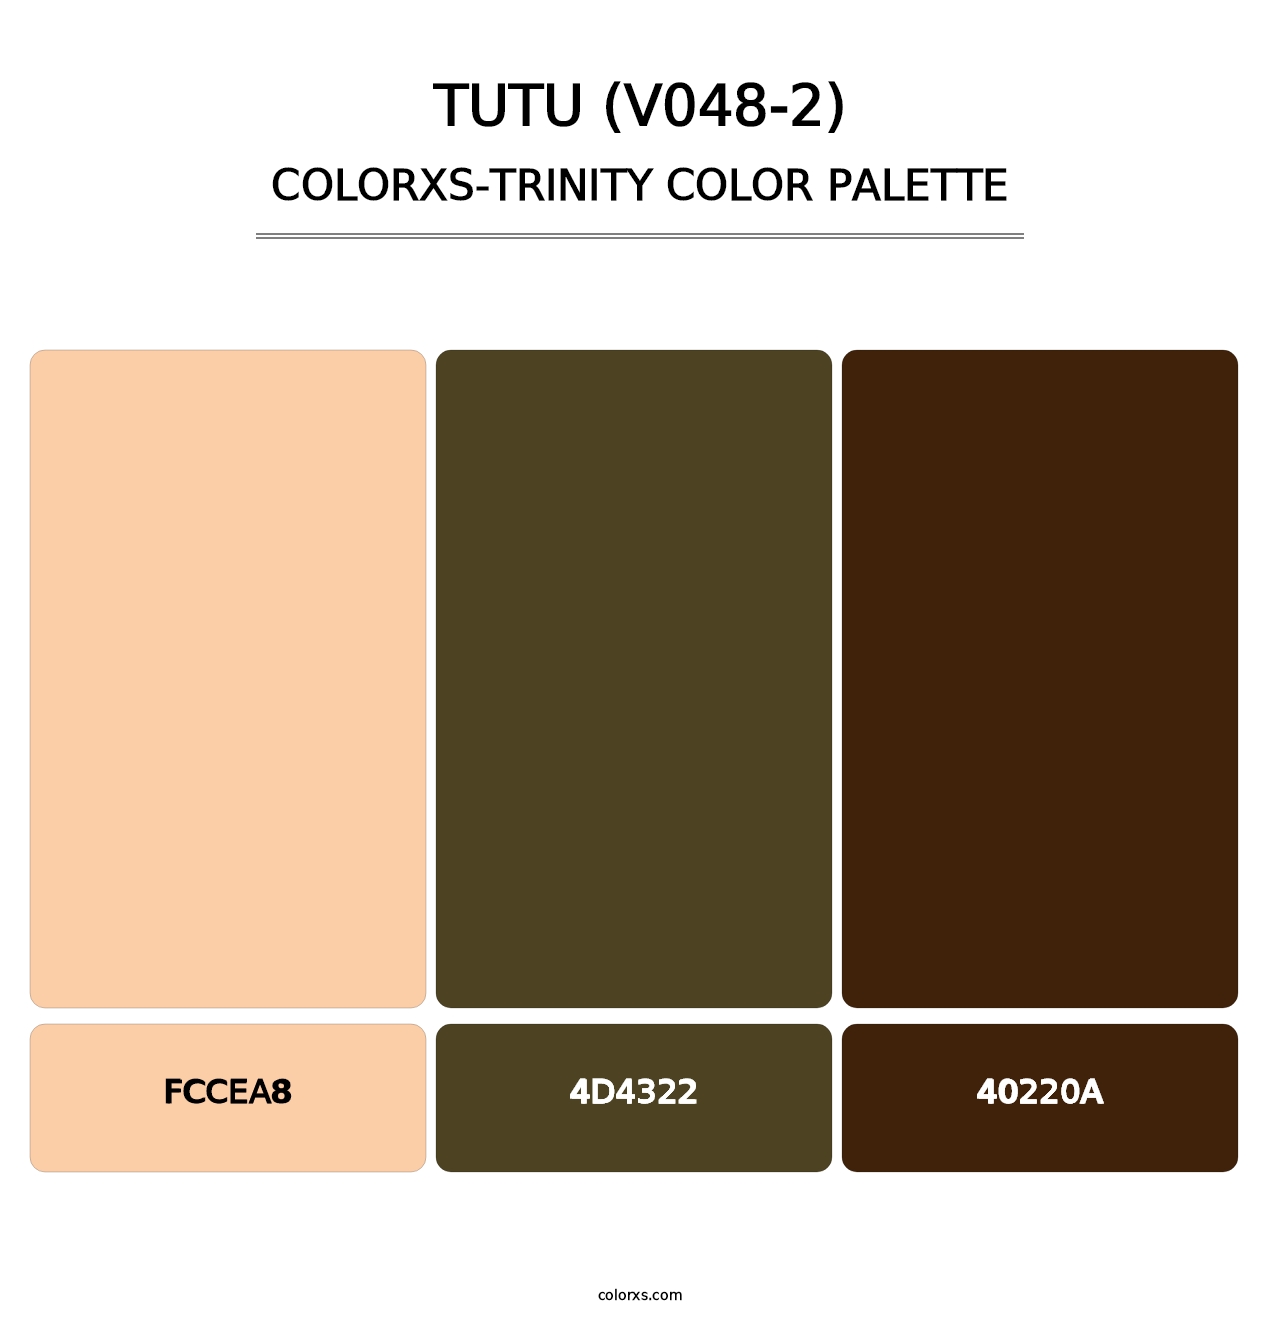 Tutu (V048-2) - Colorxs Trinity Palette